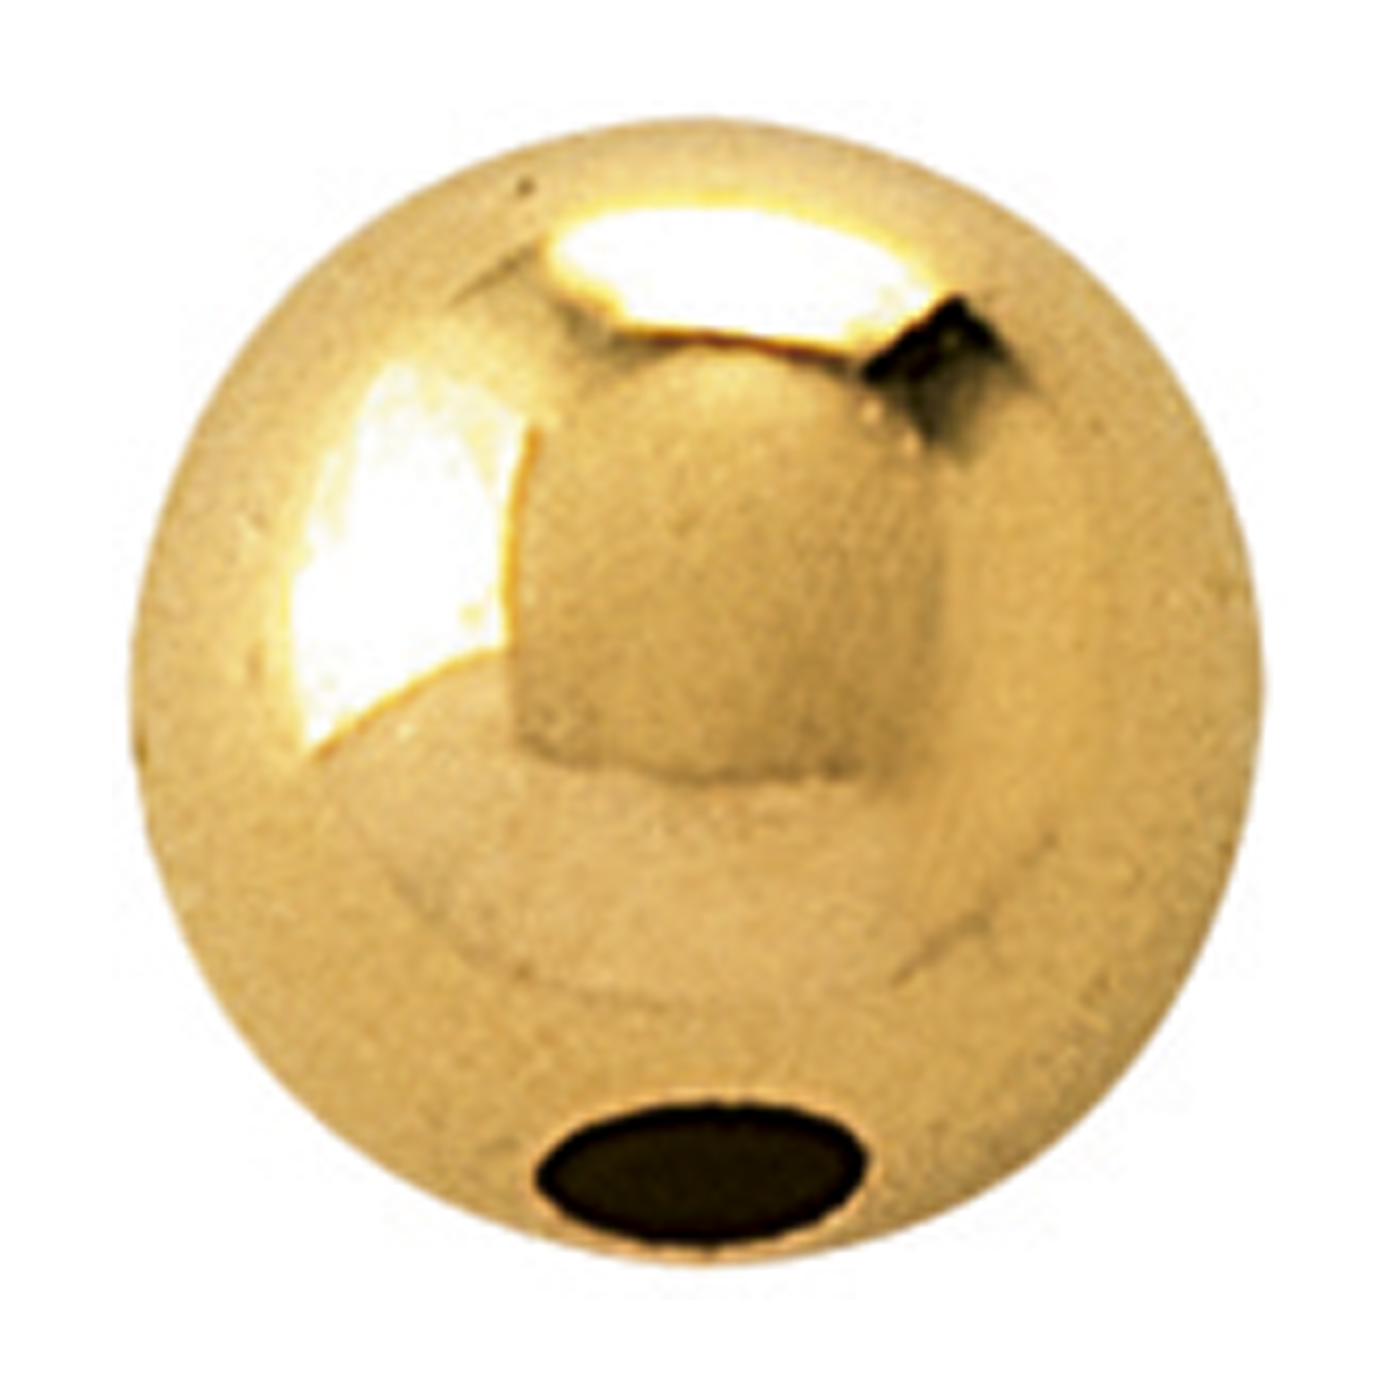 2-Hole Ball, 750G Polished, ø 3 mm - 1 piece